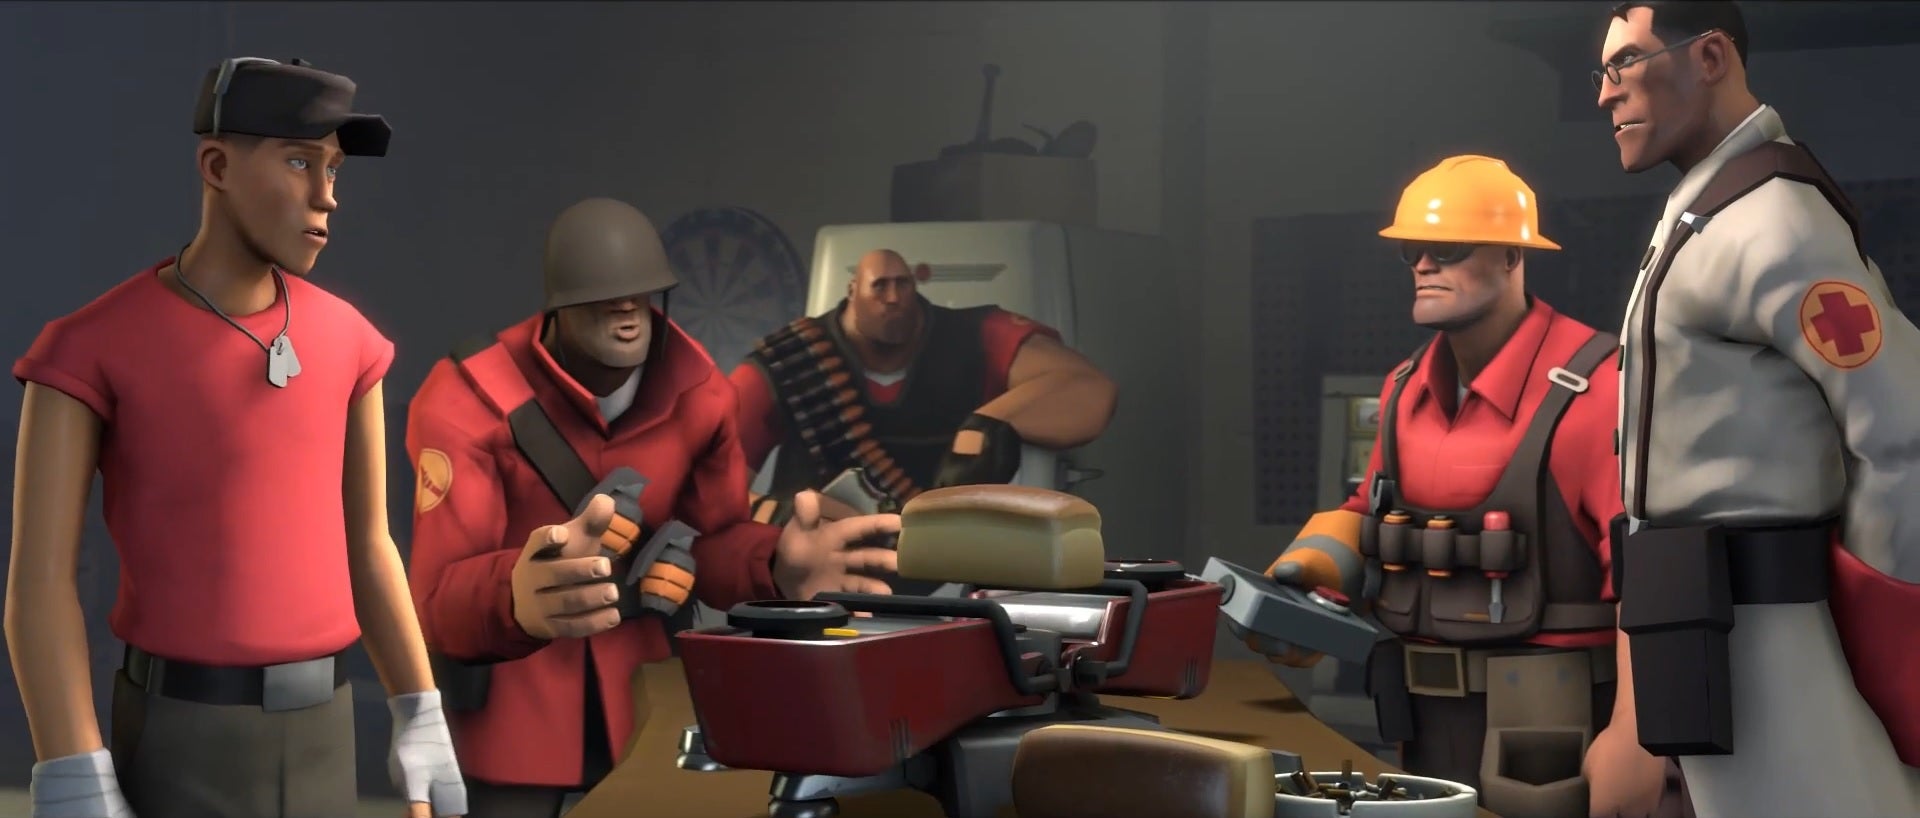 Obrazki dla Darmowa strzelanka Team Fortress 2 z aktualizacją i piętnastominutowym filmem